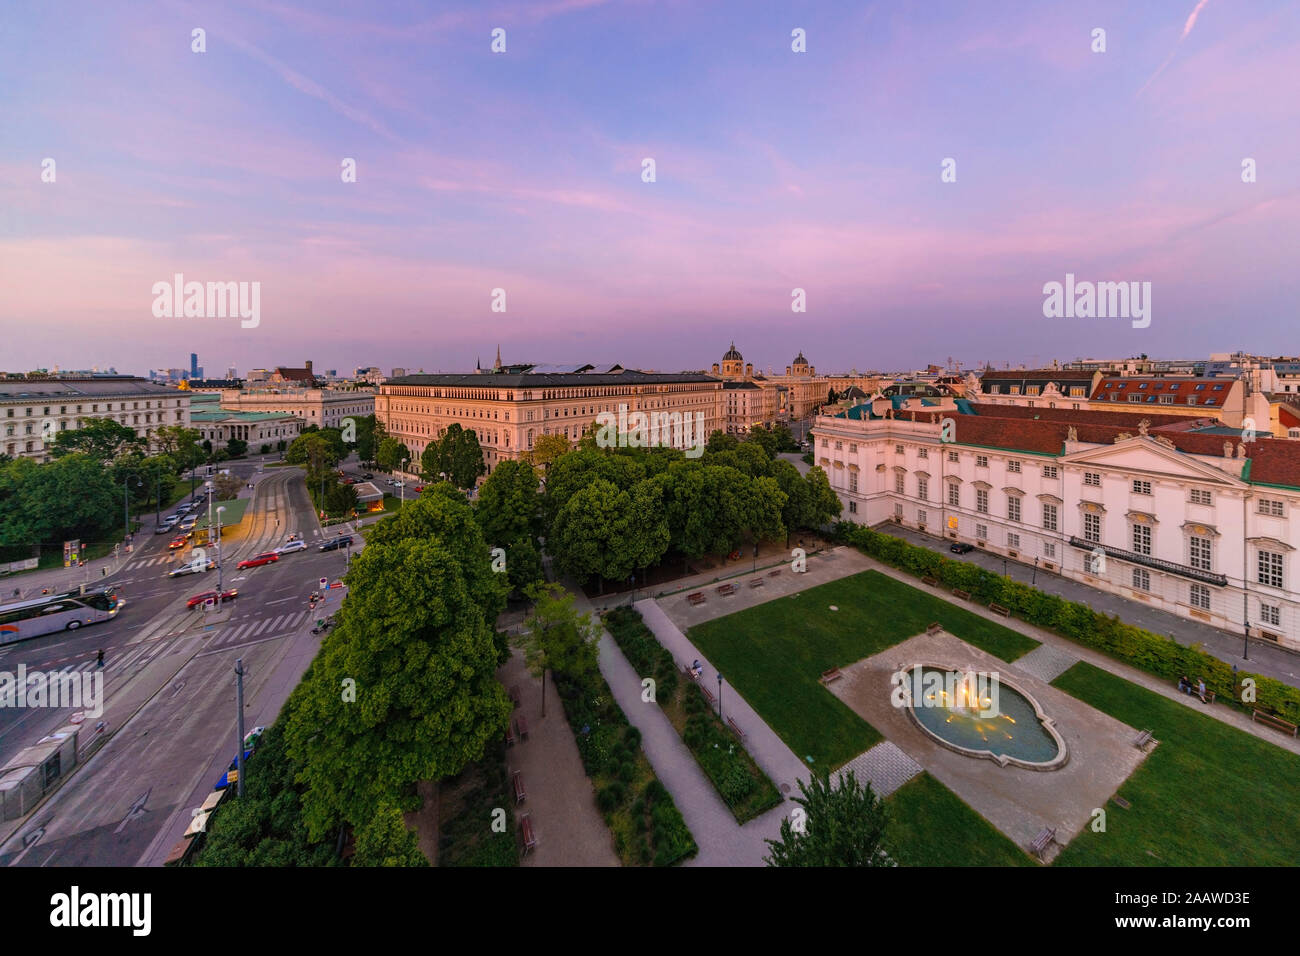 Centro histórico de Viena durante la puesta de sol, Austria Foto de stock